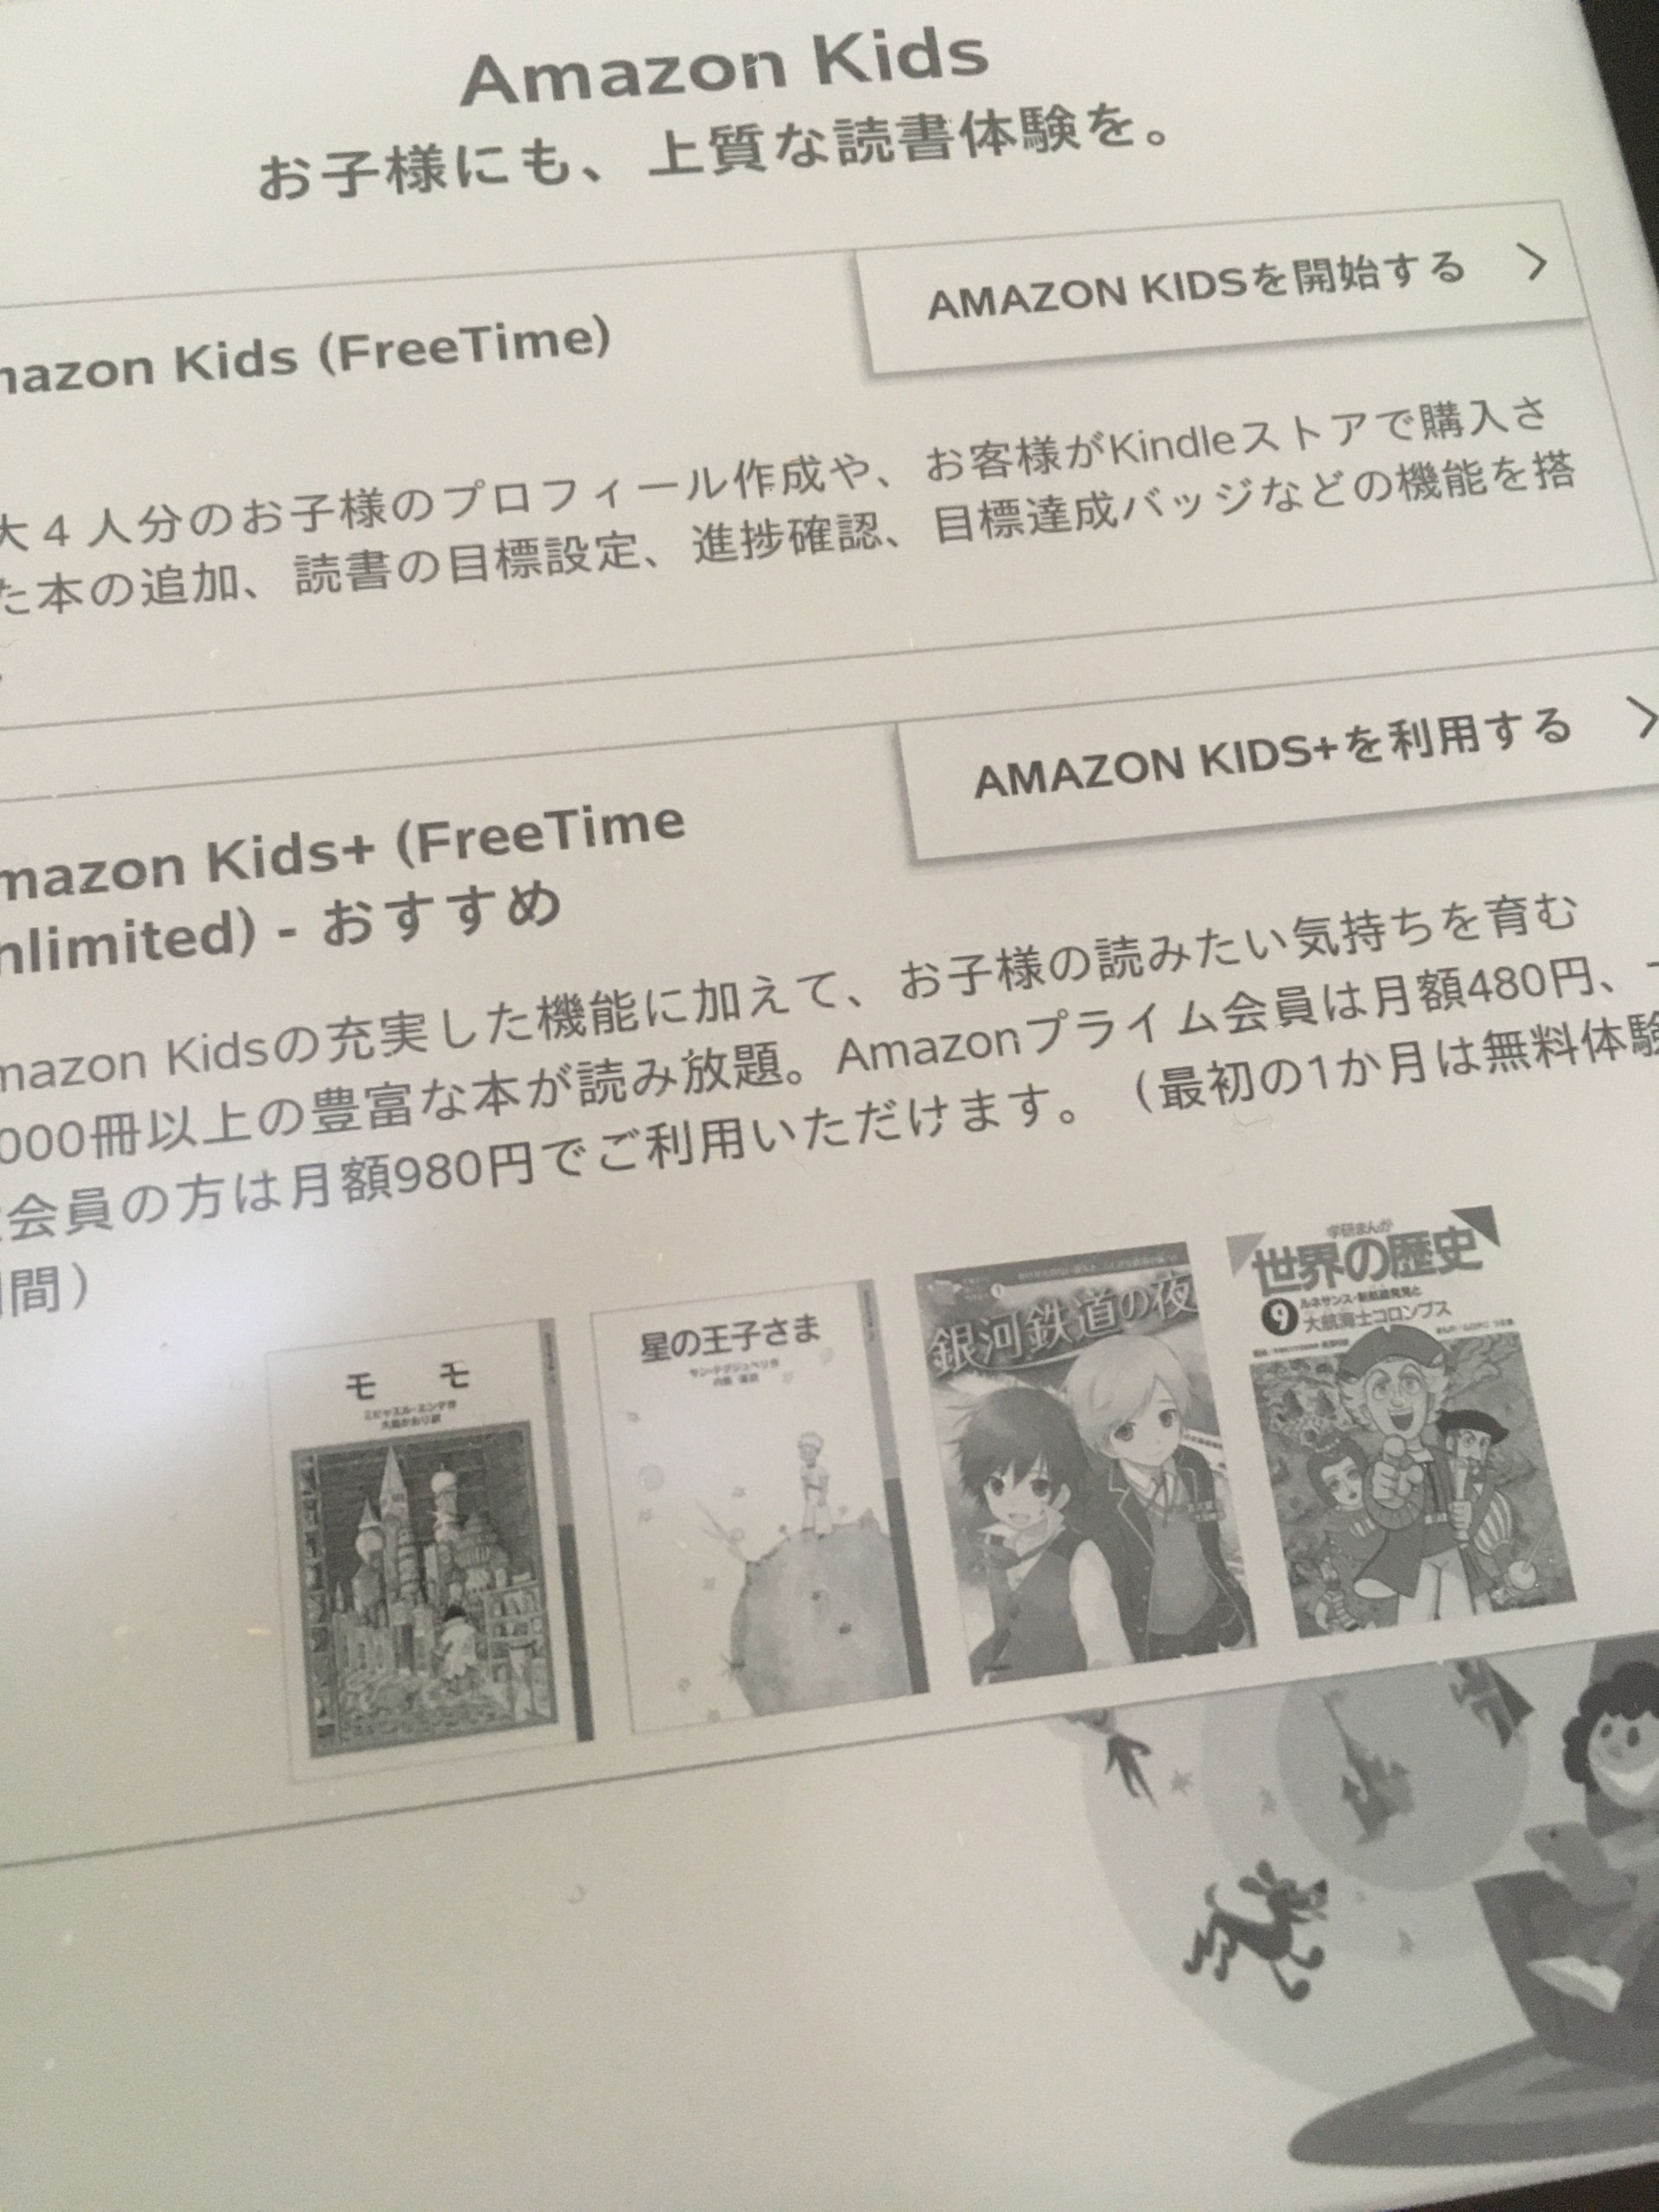 PC/タブレット タブレット 11/30追記】既存モデルも「Amazon Kids+」加入可能に、「Kindle キッズ 